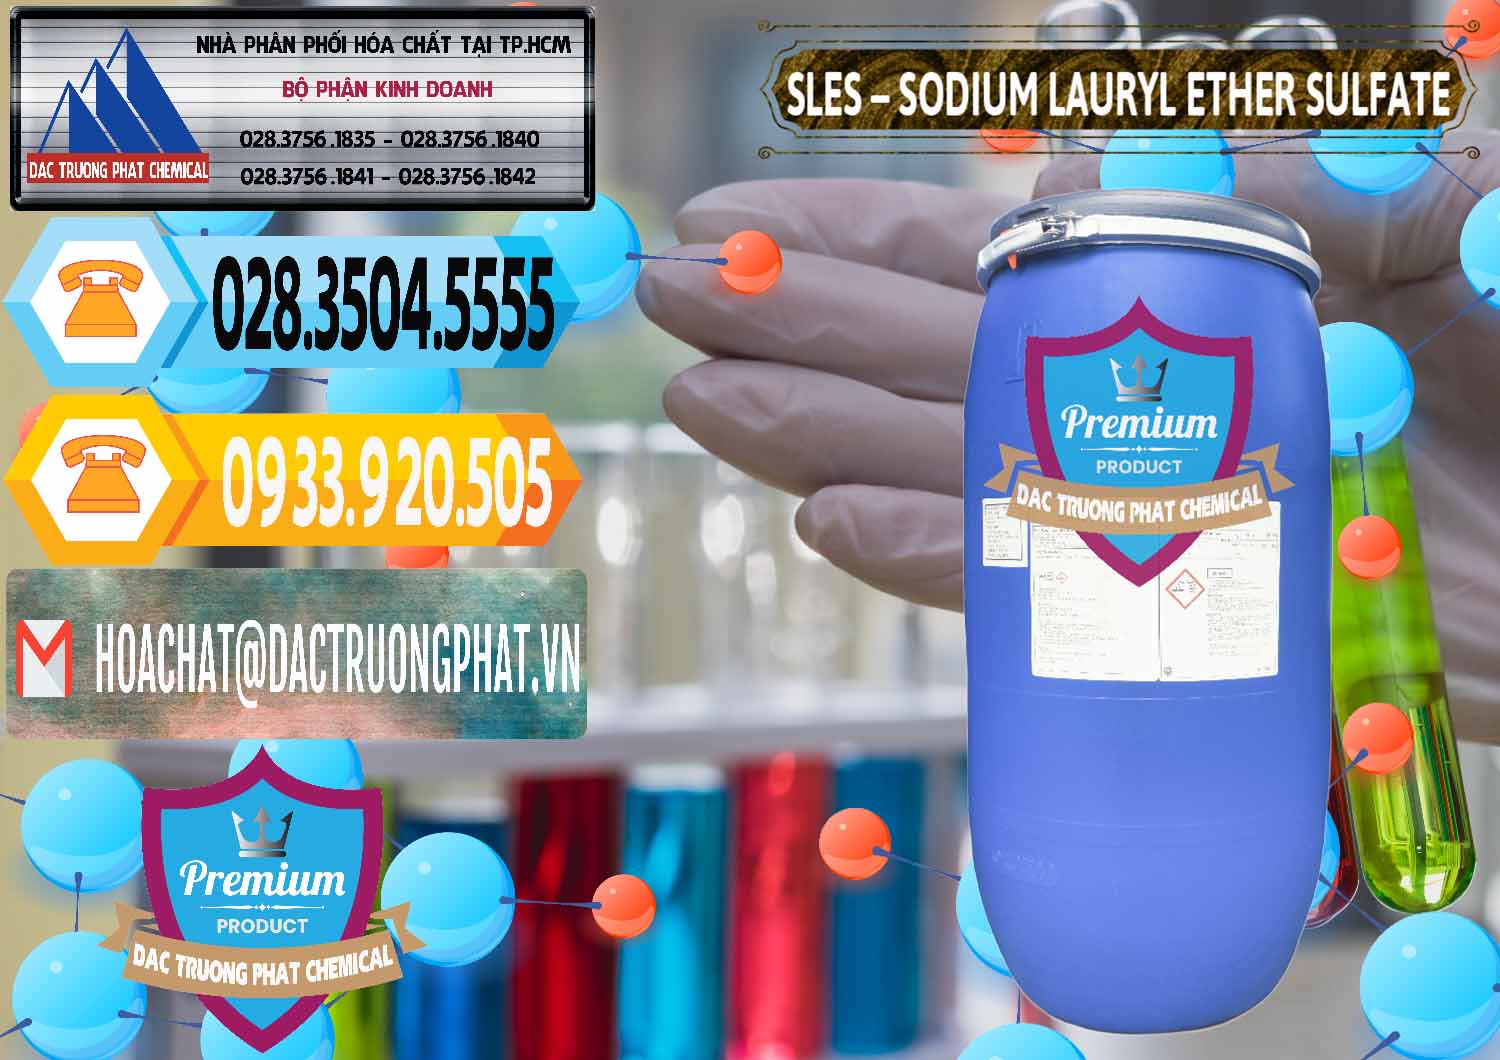 Đơn vị chuyên cung cấp - bán Chất Tạo Bọt Sles - Sodium Lauryl Ether Sulphate Kao Indonesia - 0046 - Cty nhập khẩu và cung cấp hóa chất tại TP.HCM - hoachattayrua.net